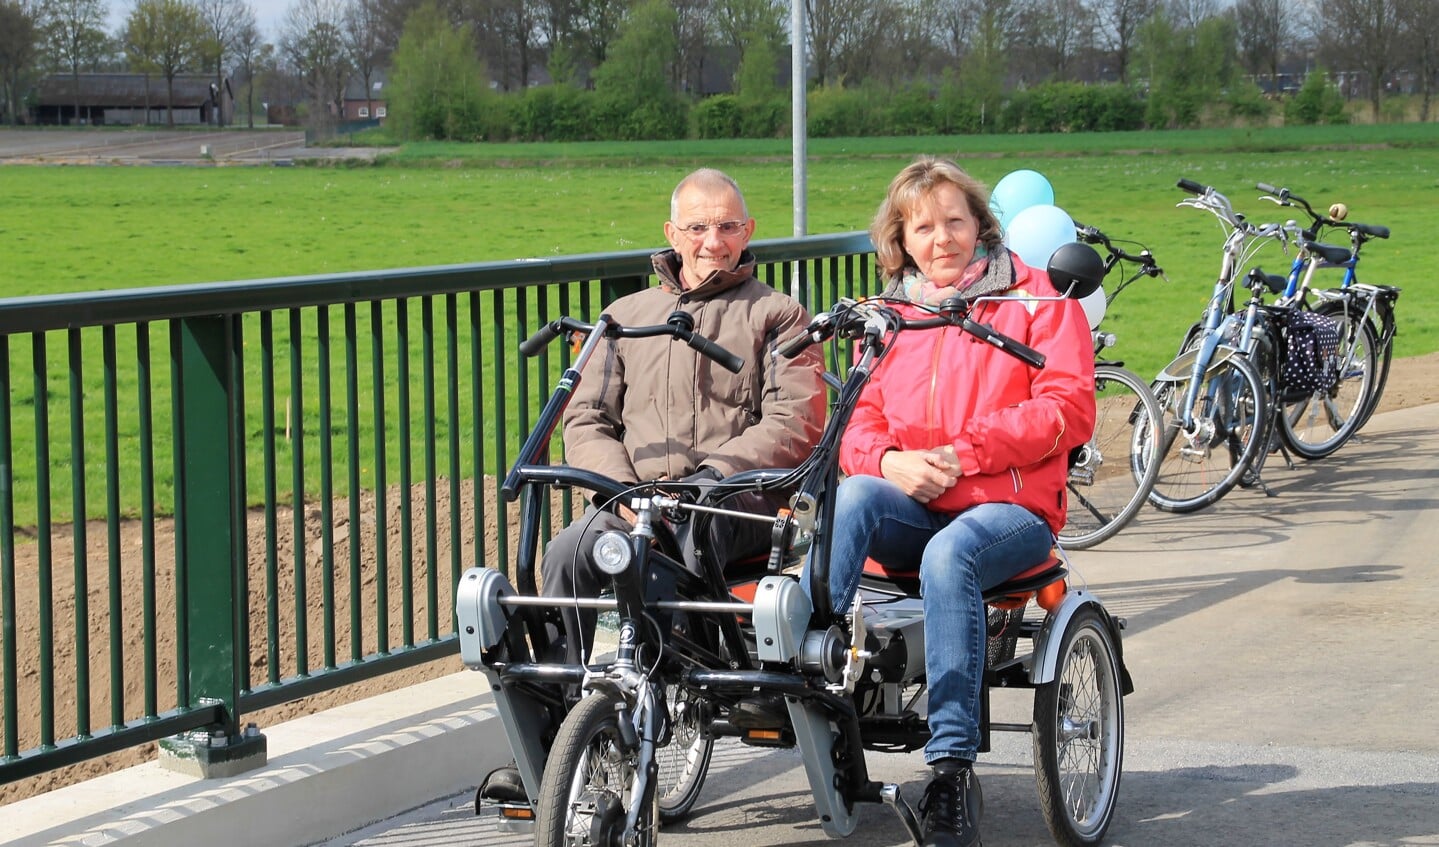 Cor van den Acker en Anita van den Akker mochten als eerste de brug over fietsen. 